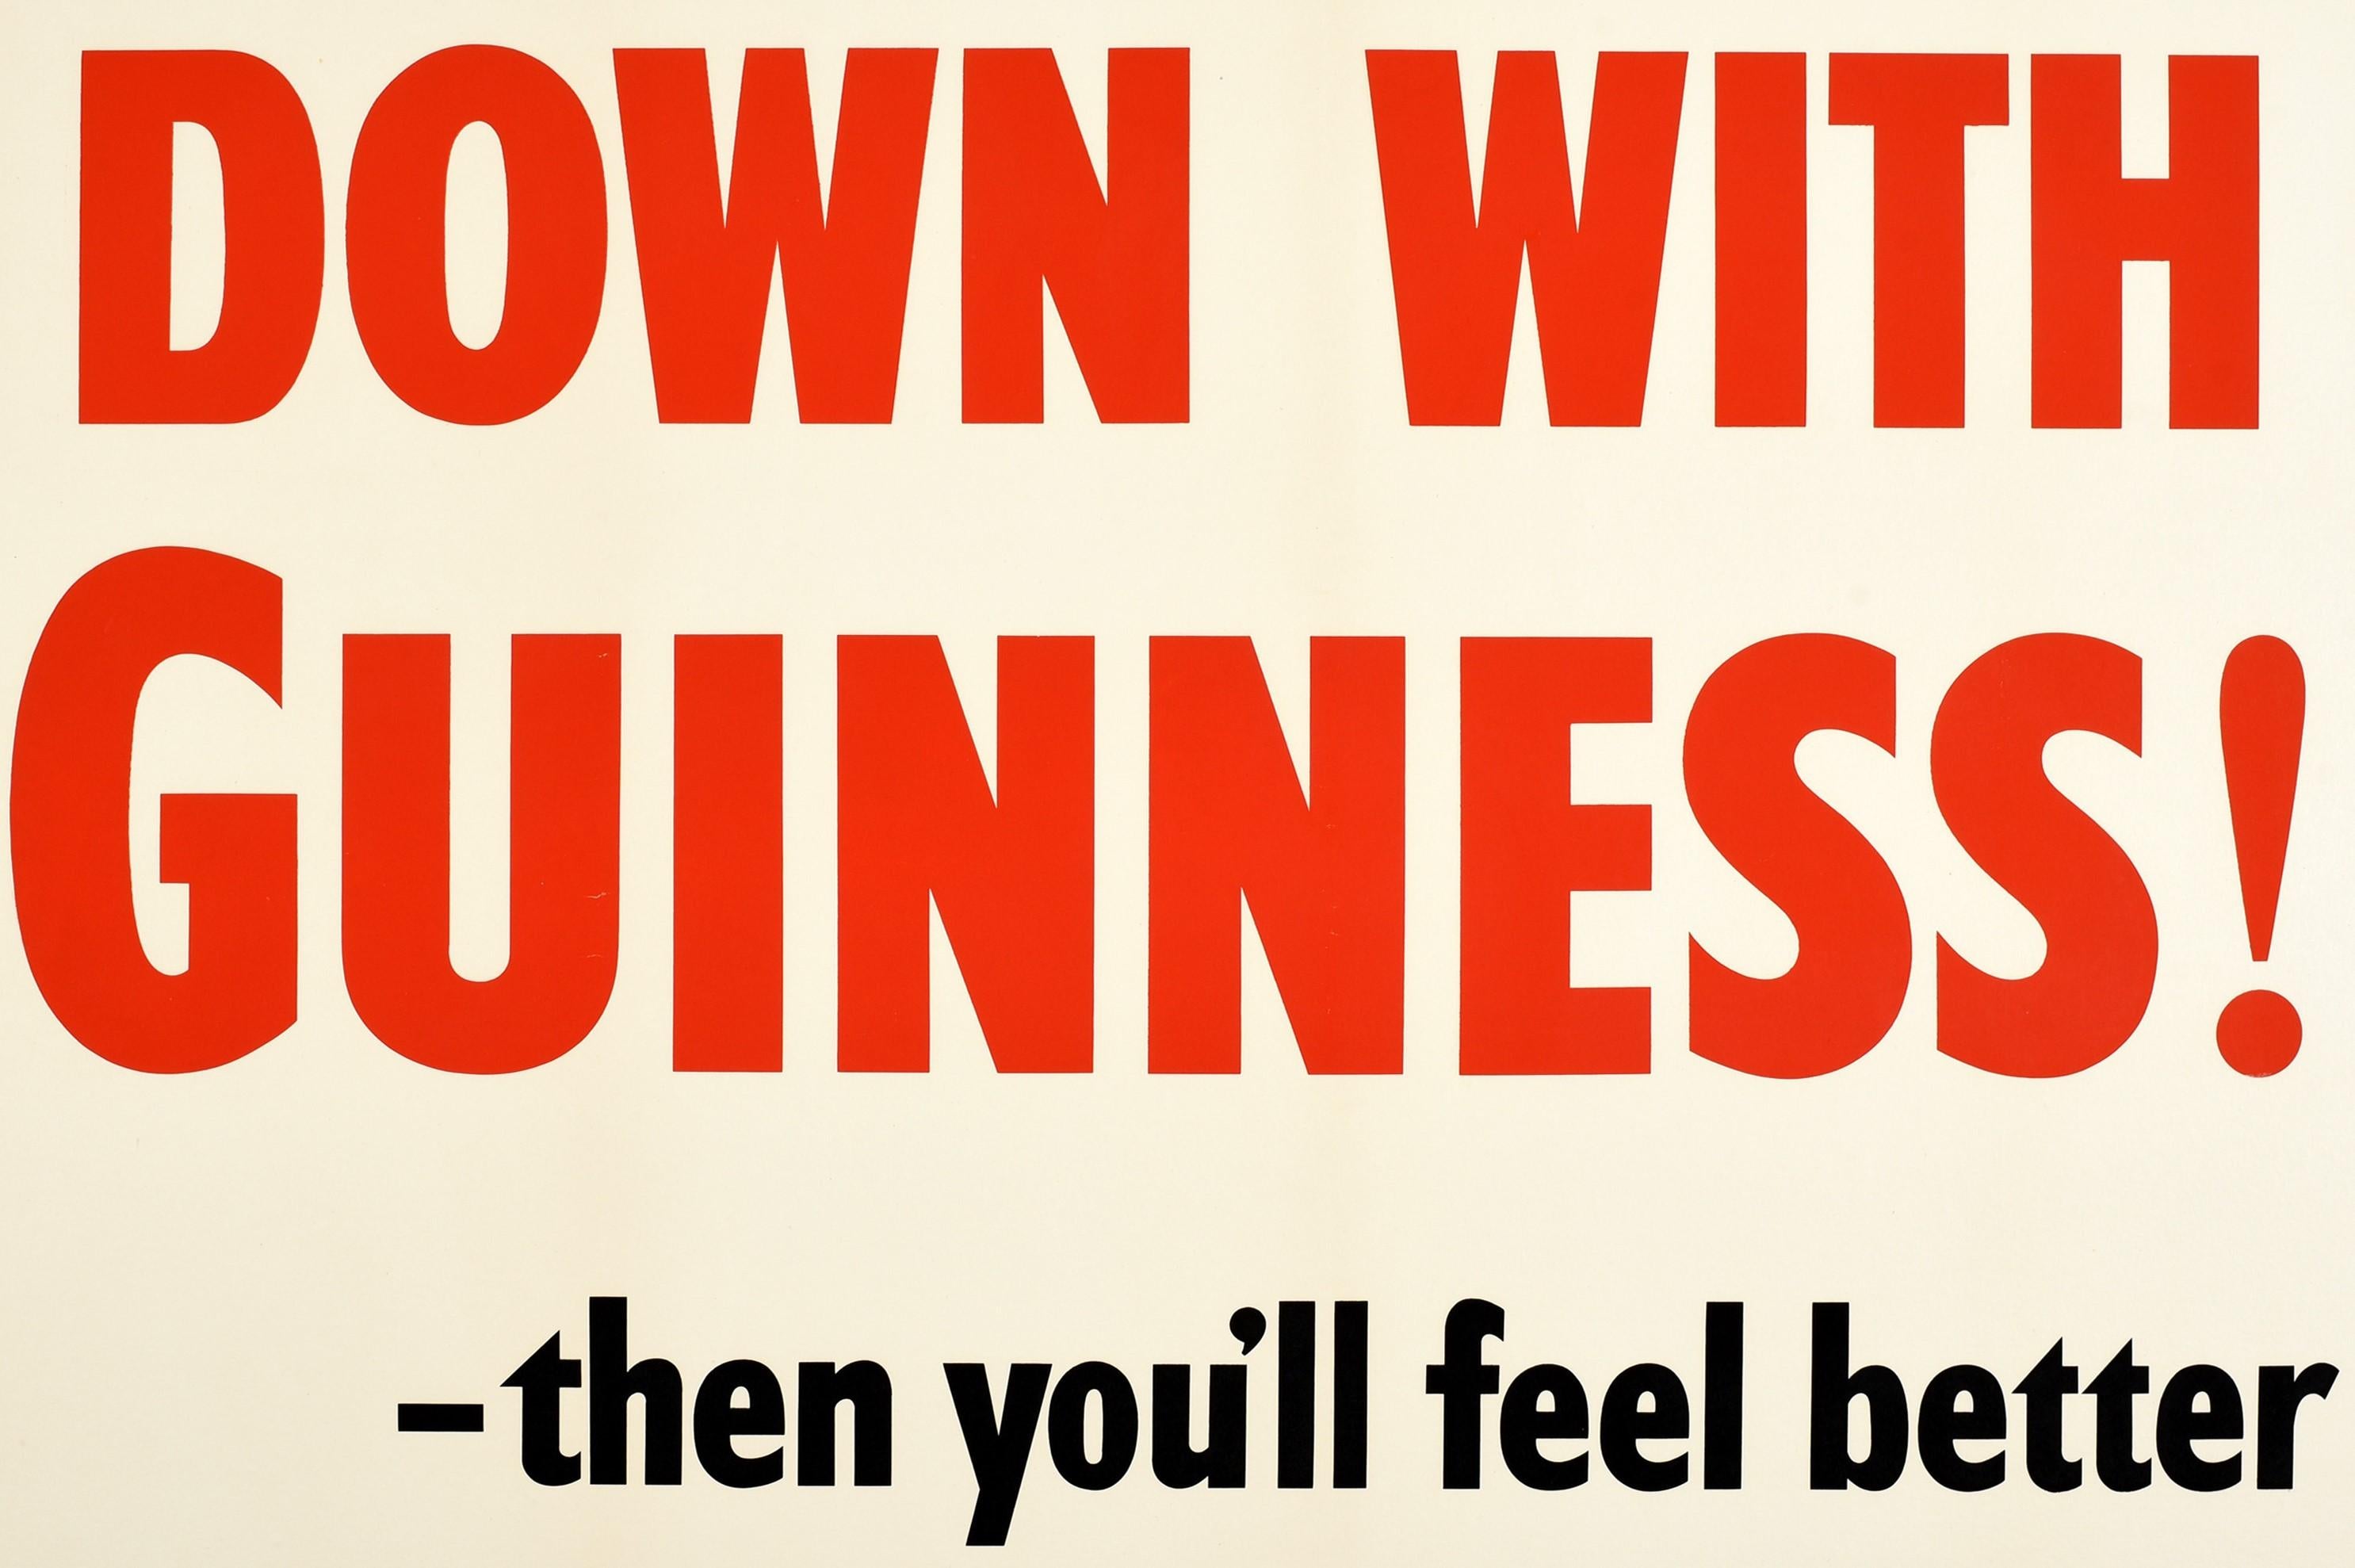 Original-Getränke-Werbeplakat mit Text in fetten roten und schwarzen Buchstaben, umrahmt von einem grünen Linienrand: Runter mit Guinness! - dann werden Sie sich besser fühlen. Guinness, eine der beliebtesten Biermarken der Welt, ist ein irisches